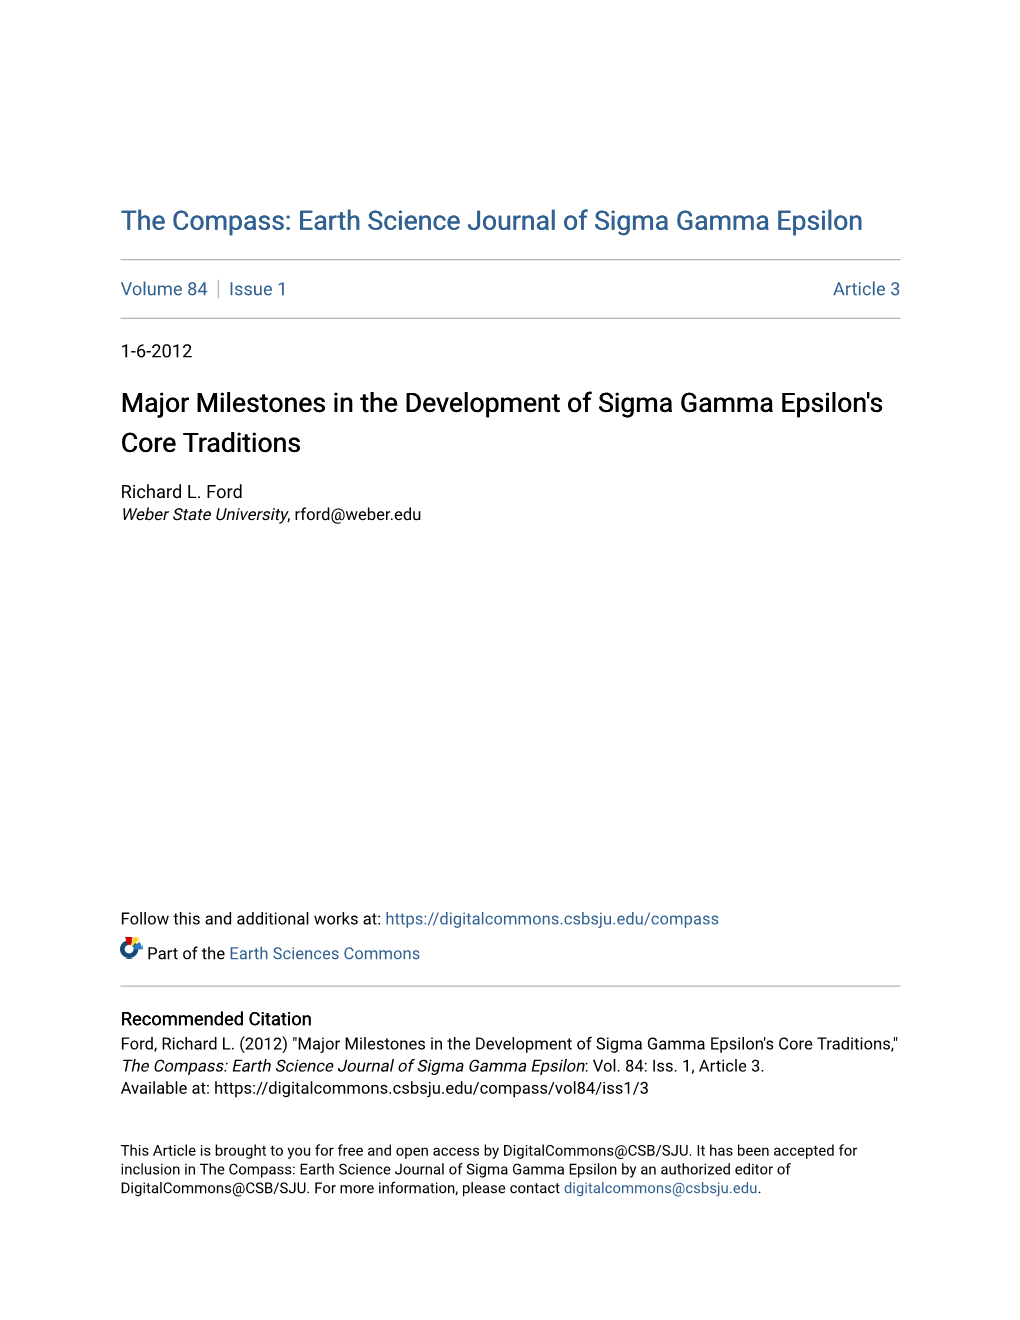 Major Milestones in the Development of Sigma Gamma Epsilon's Core Traditions